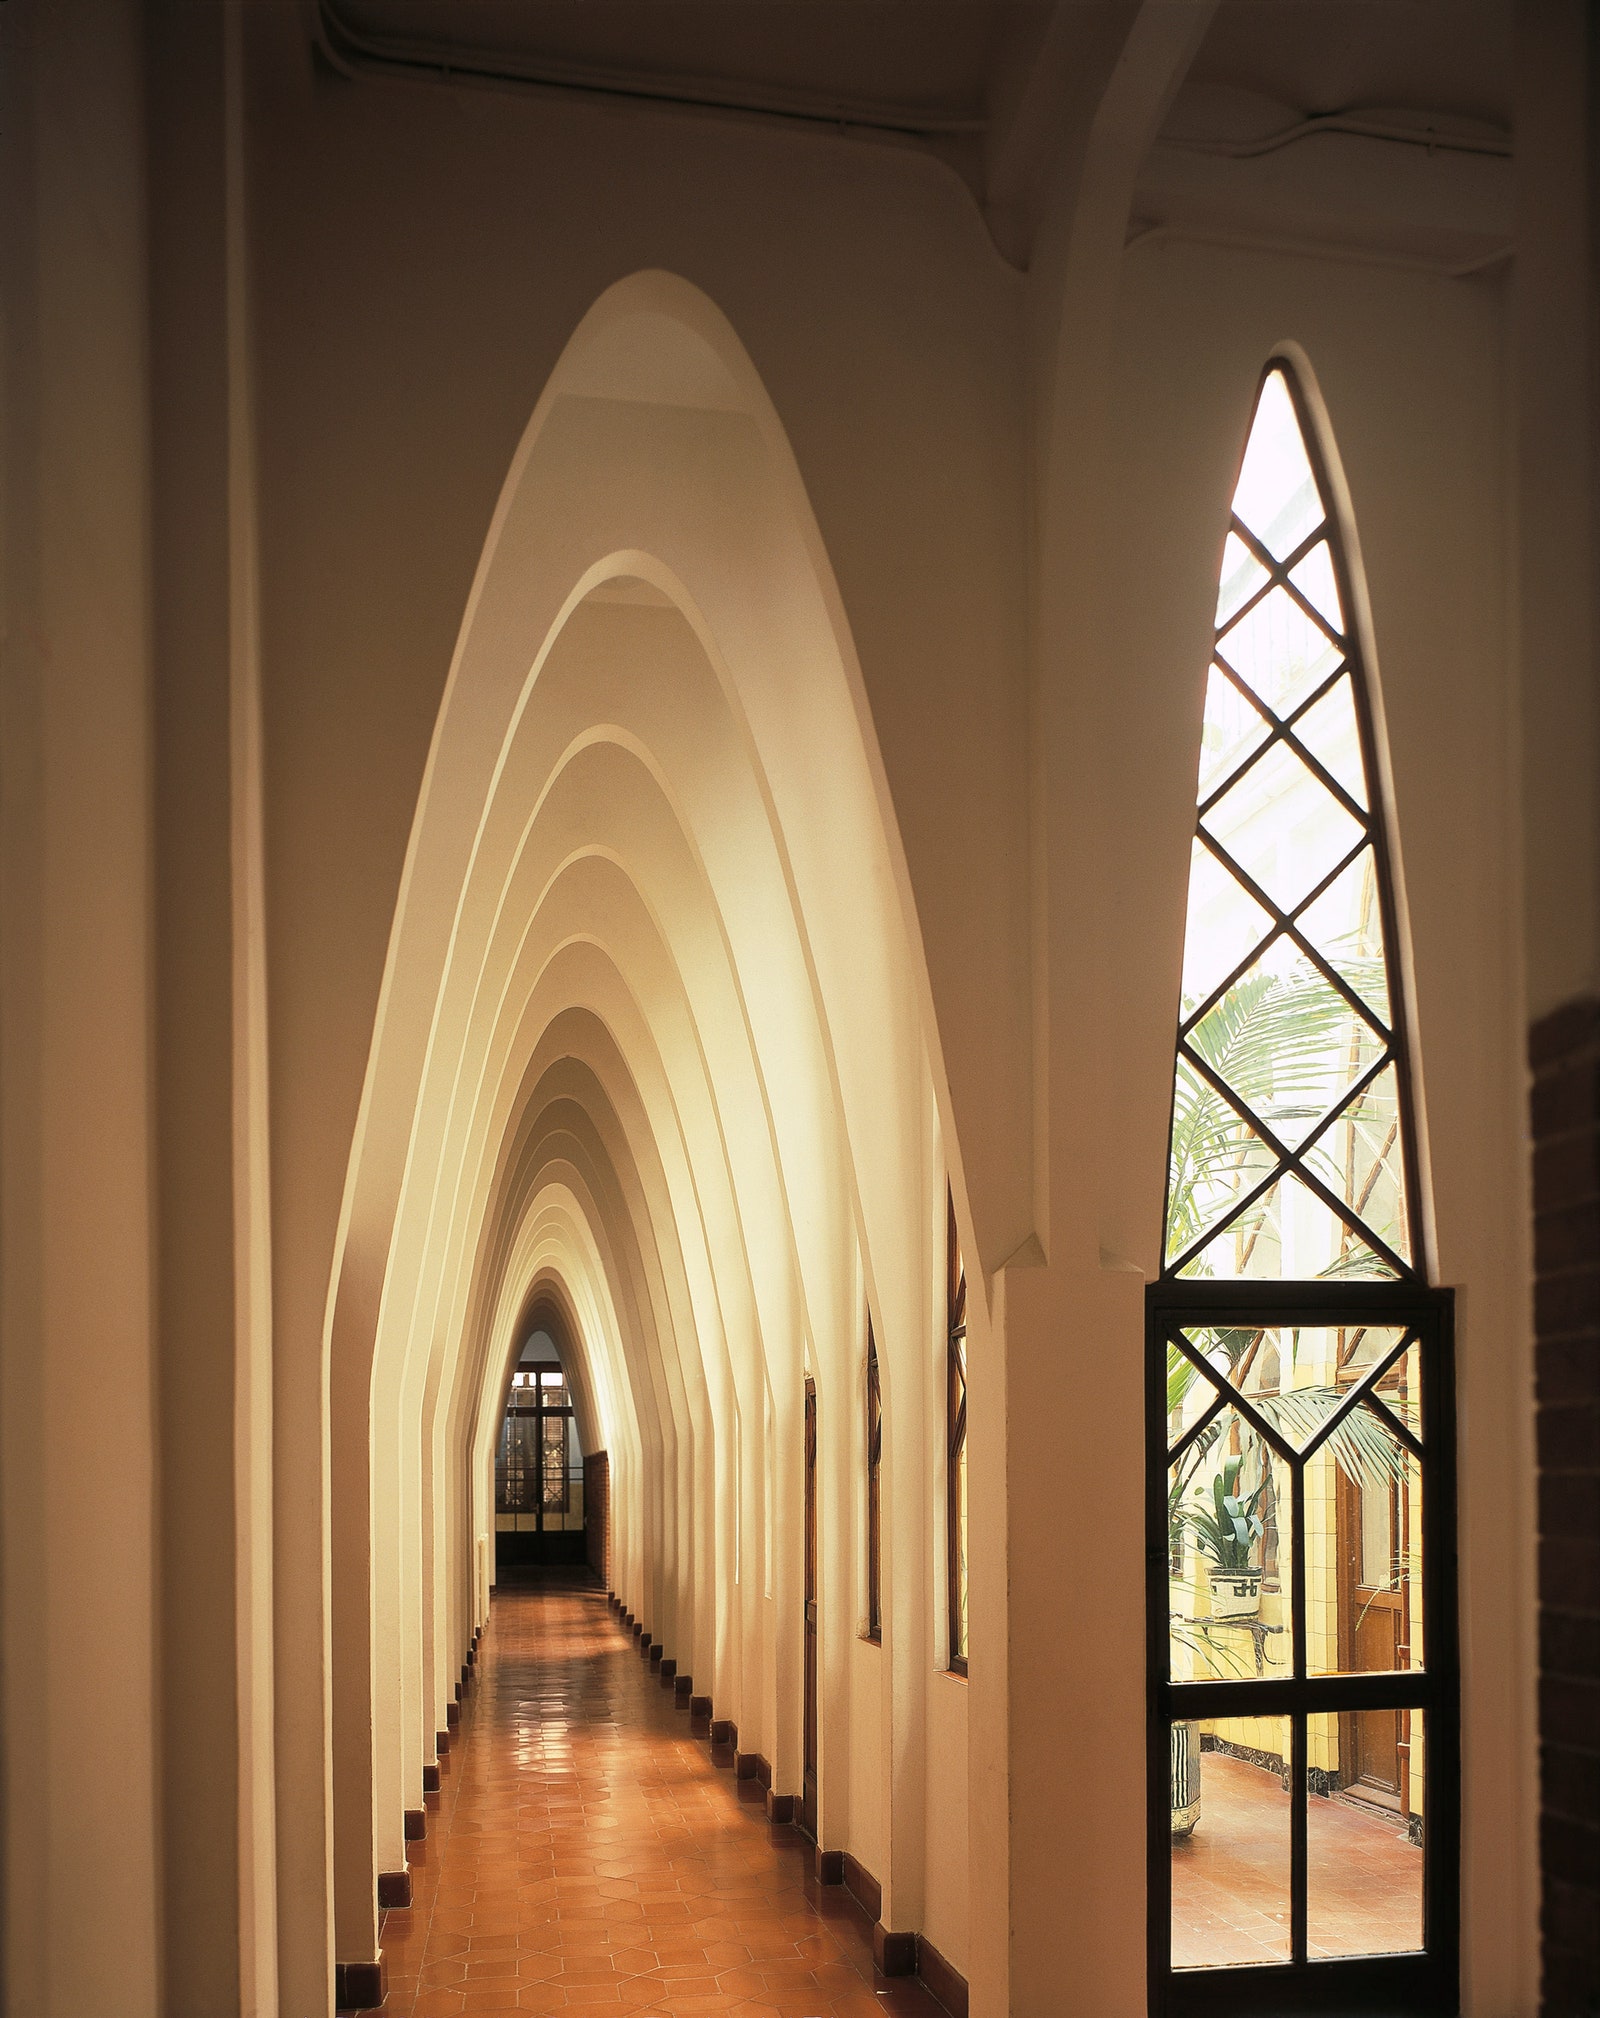 Коридор первого этажа с параболическими арками школа при монастыре Святой Терезы в Барселоне. Архитектор Антонио Гауди.